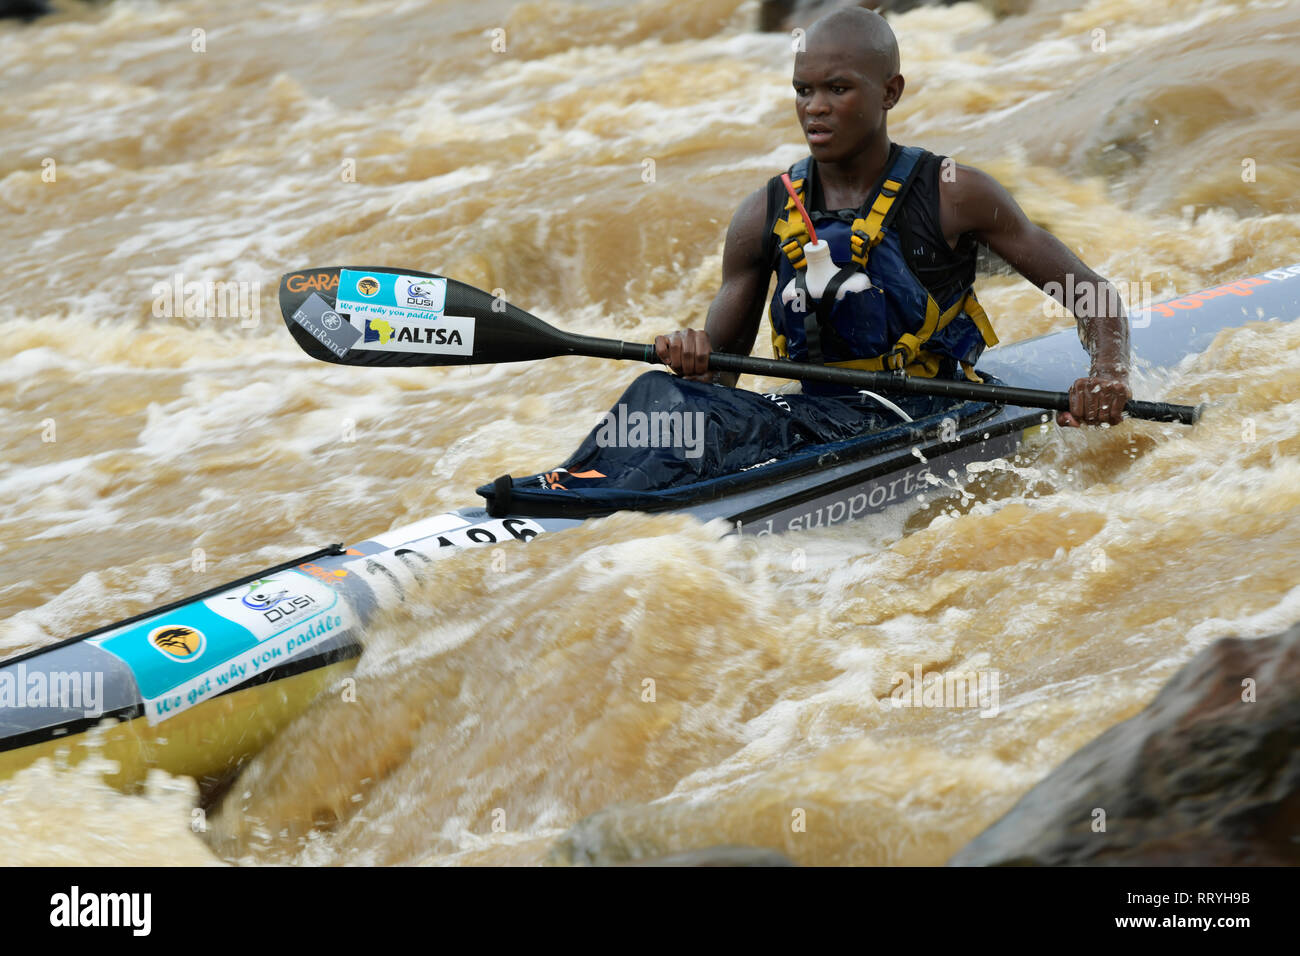 Durban, KwaZulu-Natal, South Africa, single adult man paddling kayak, competitor, 2019, Dusi Canoe marathon, action, motion, competition Stock Photo